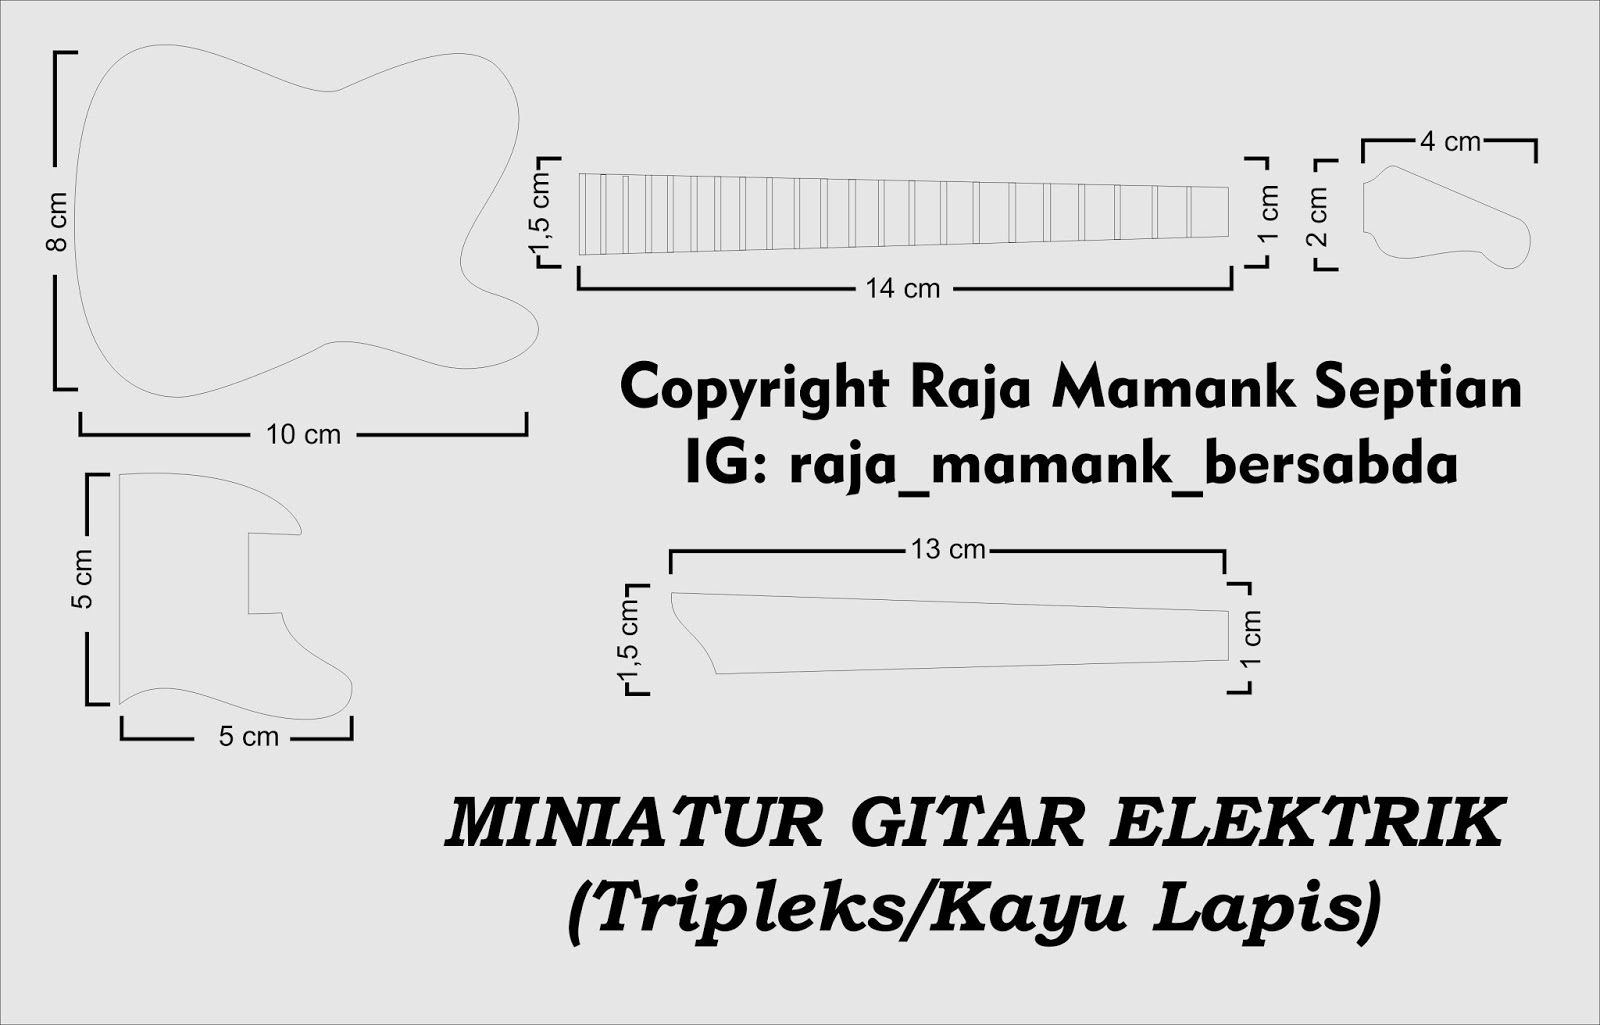 Langkah Langkah Cara Membuat Miniatur Gitar Elektrik Dari Tripleks